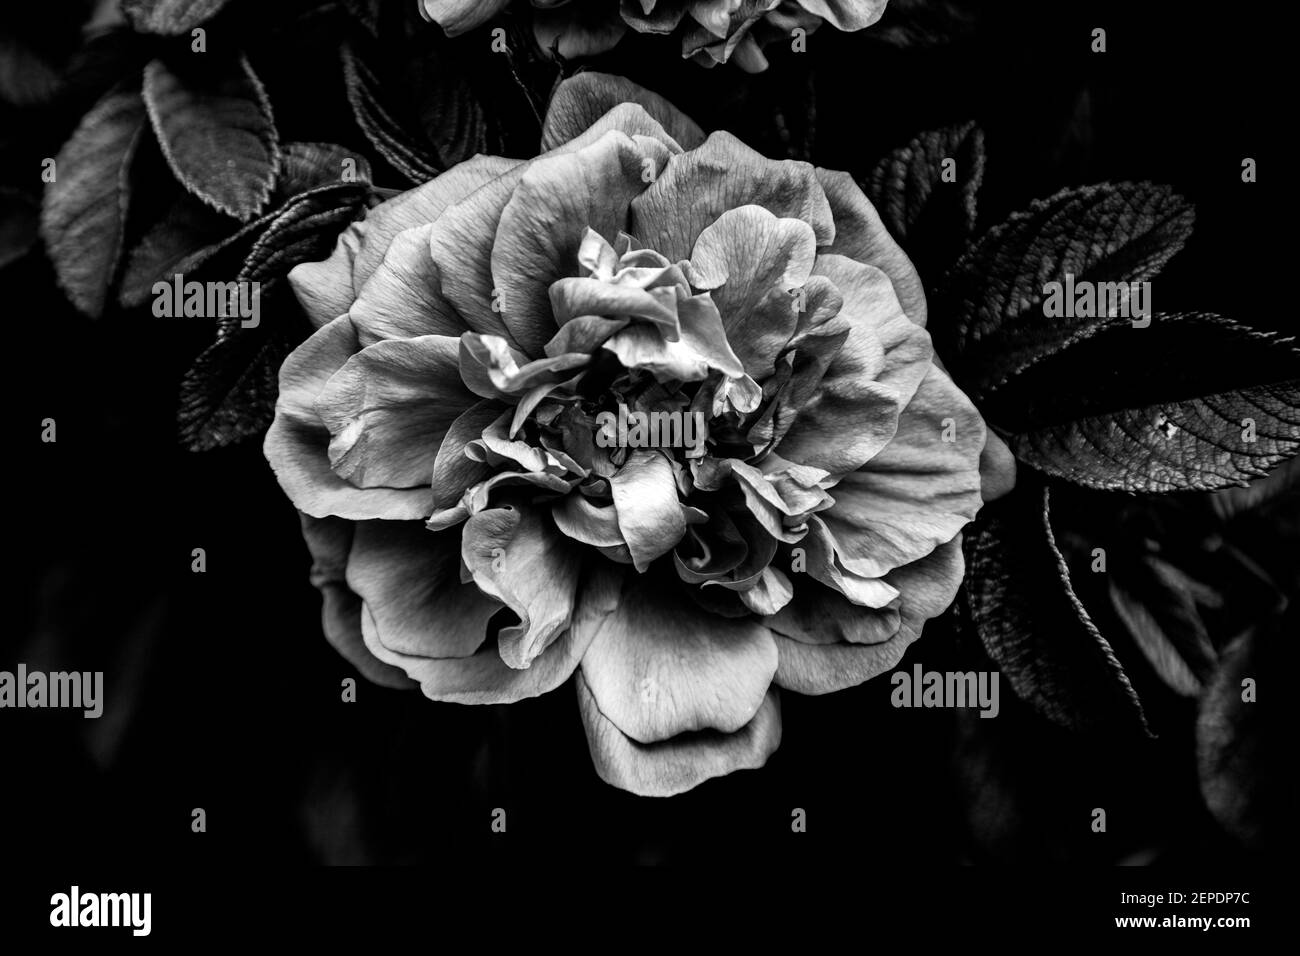 Low Key Bild einer schönen Rose in schwarz und weiß und mit hohem Kontrast und Details, die einen dramatischen Effekt und eine dunkle Stimmung. Stockfoto